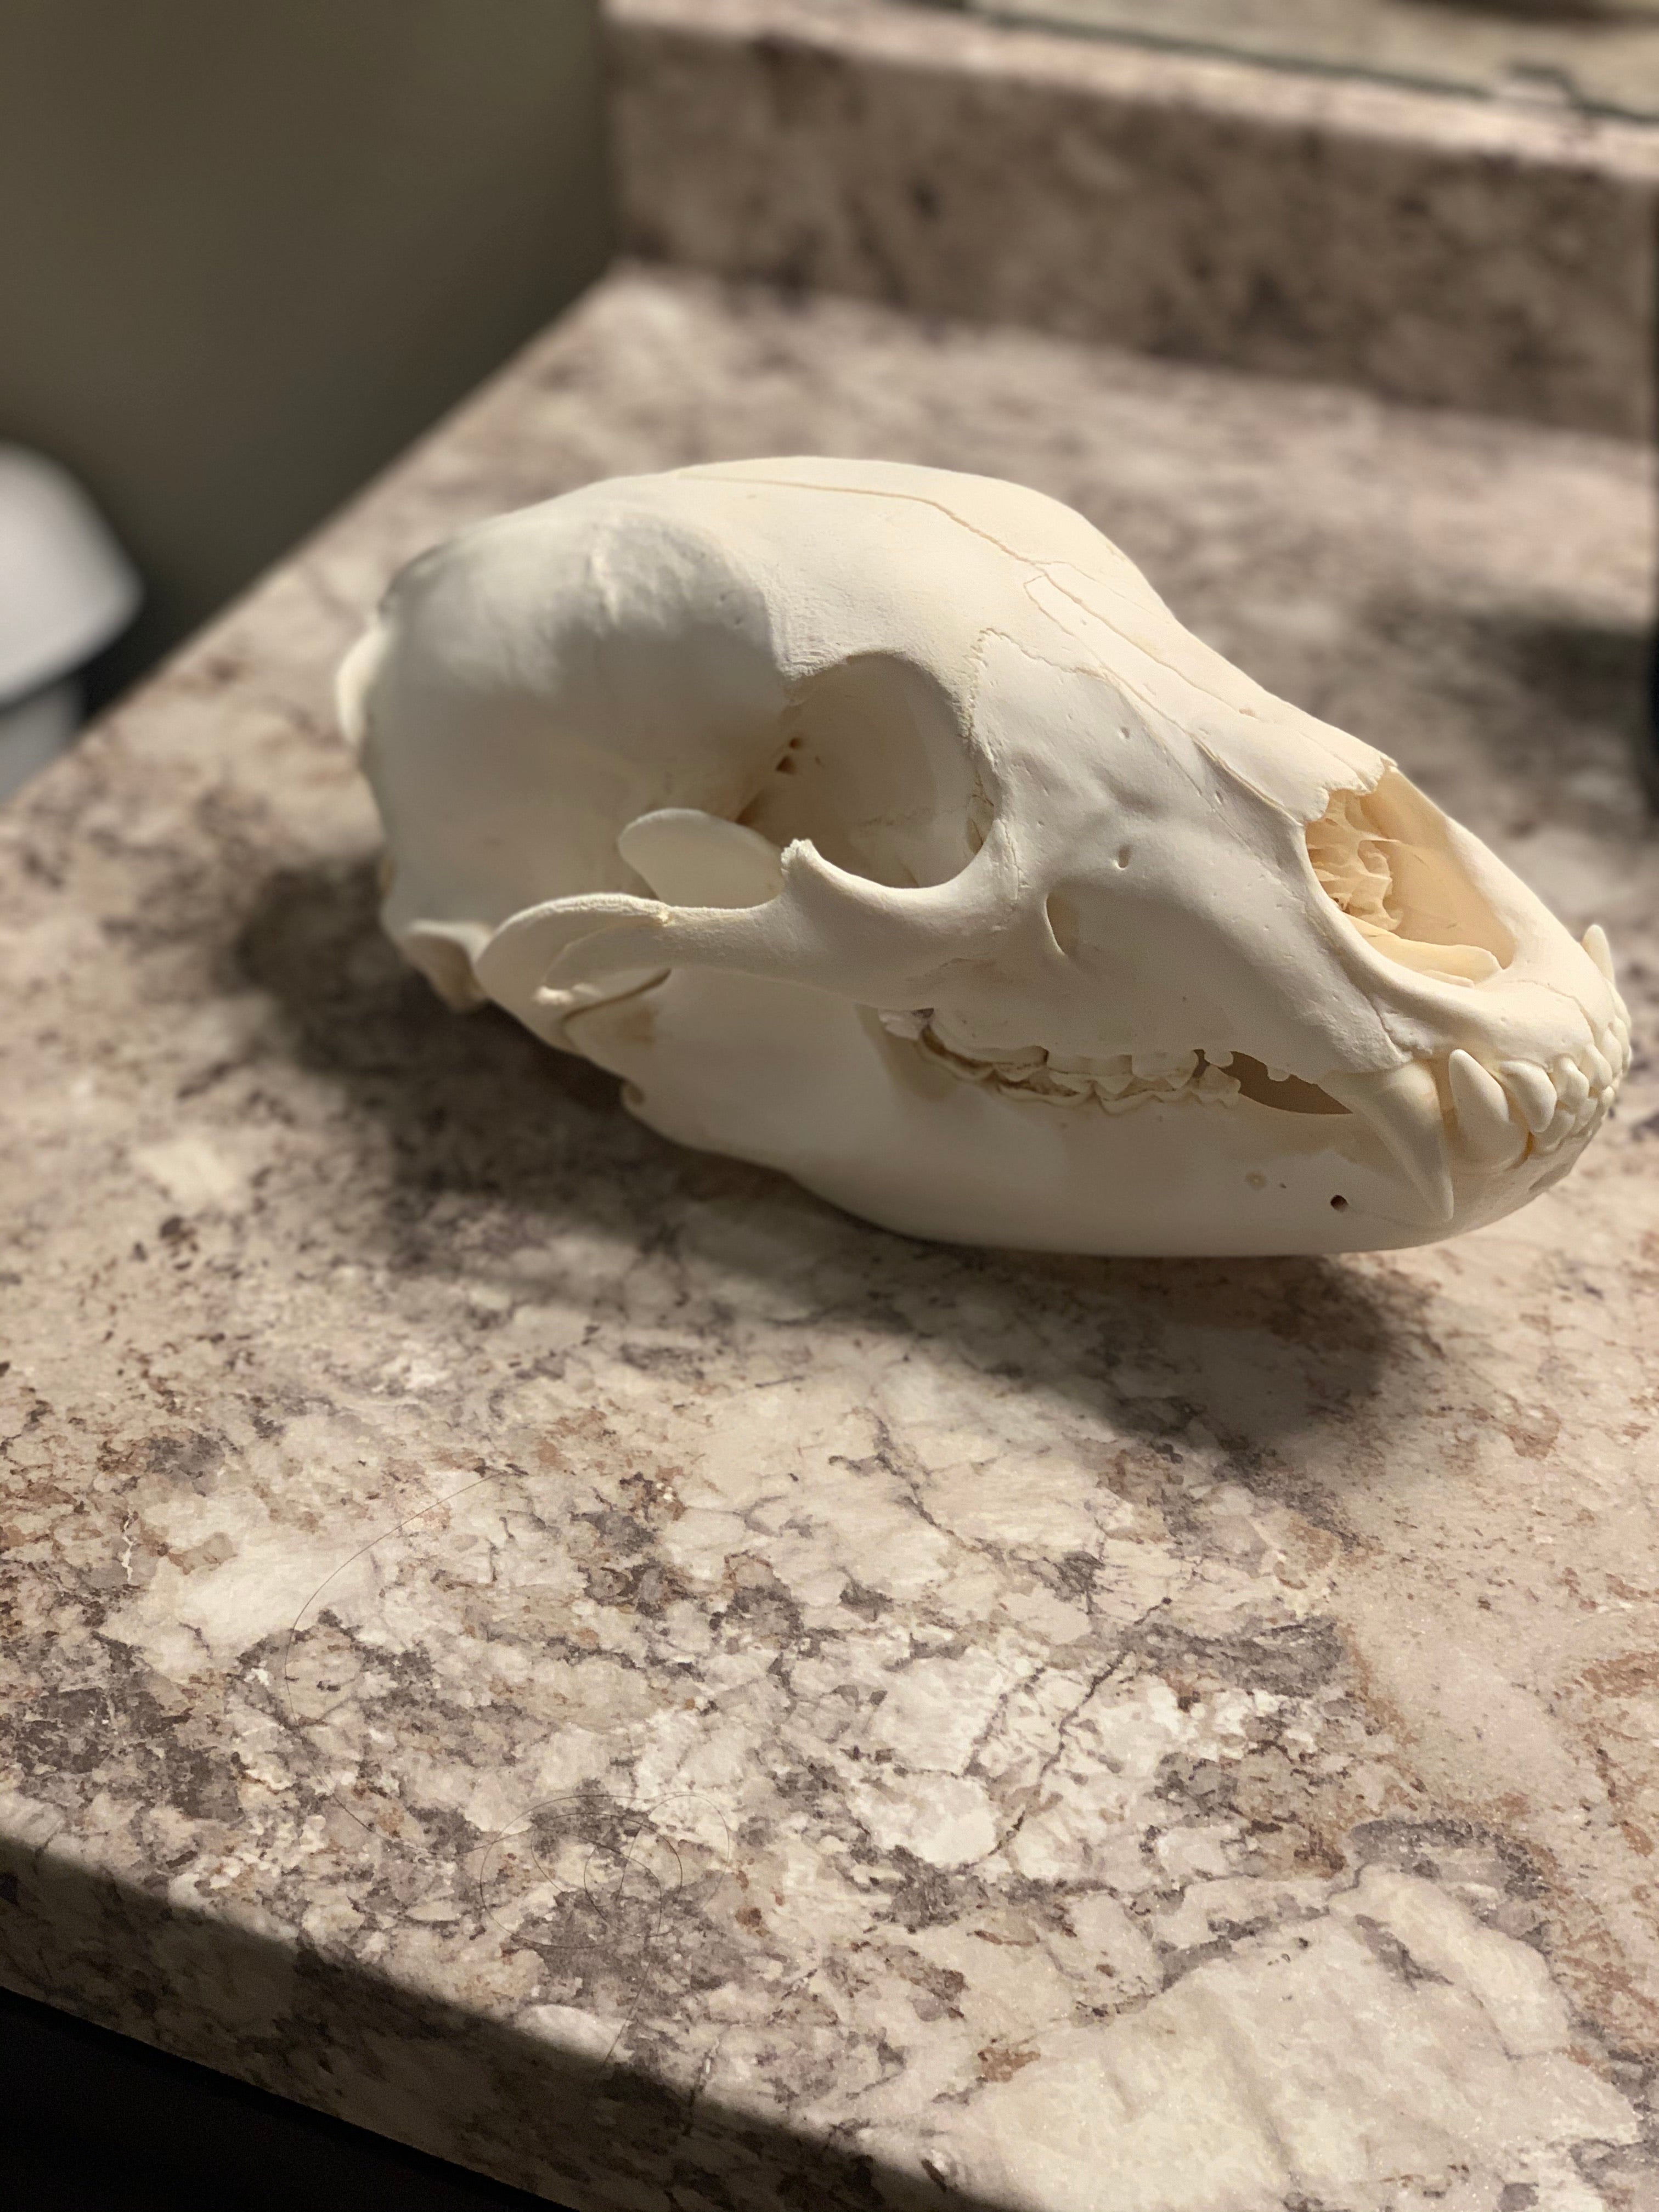 Black bear skull